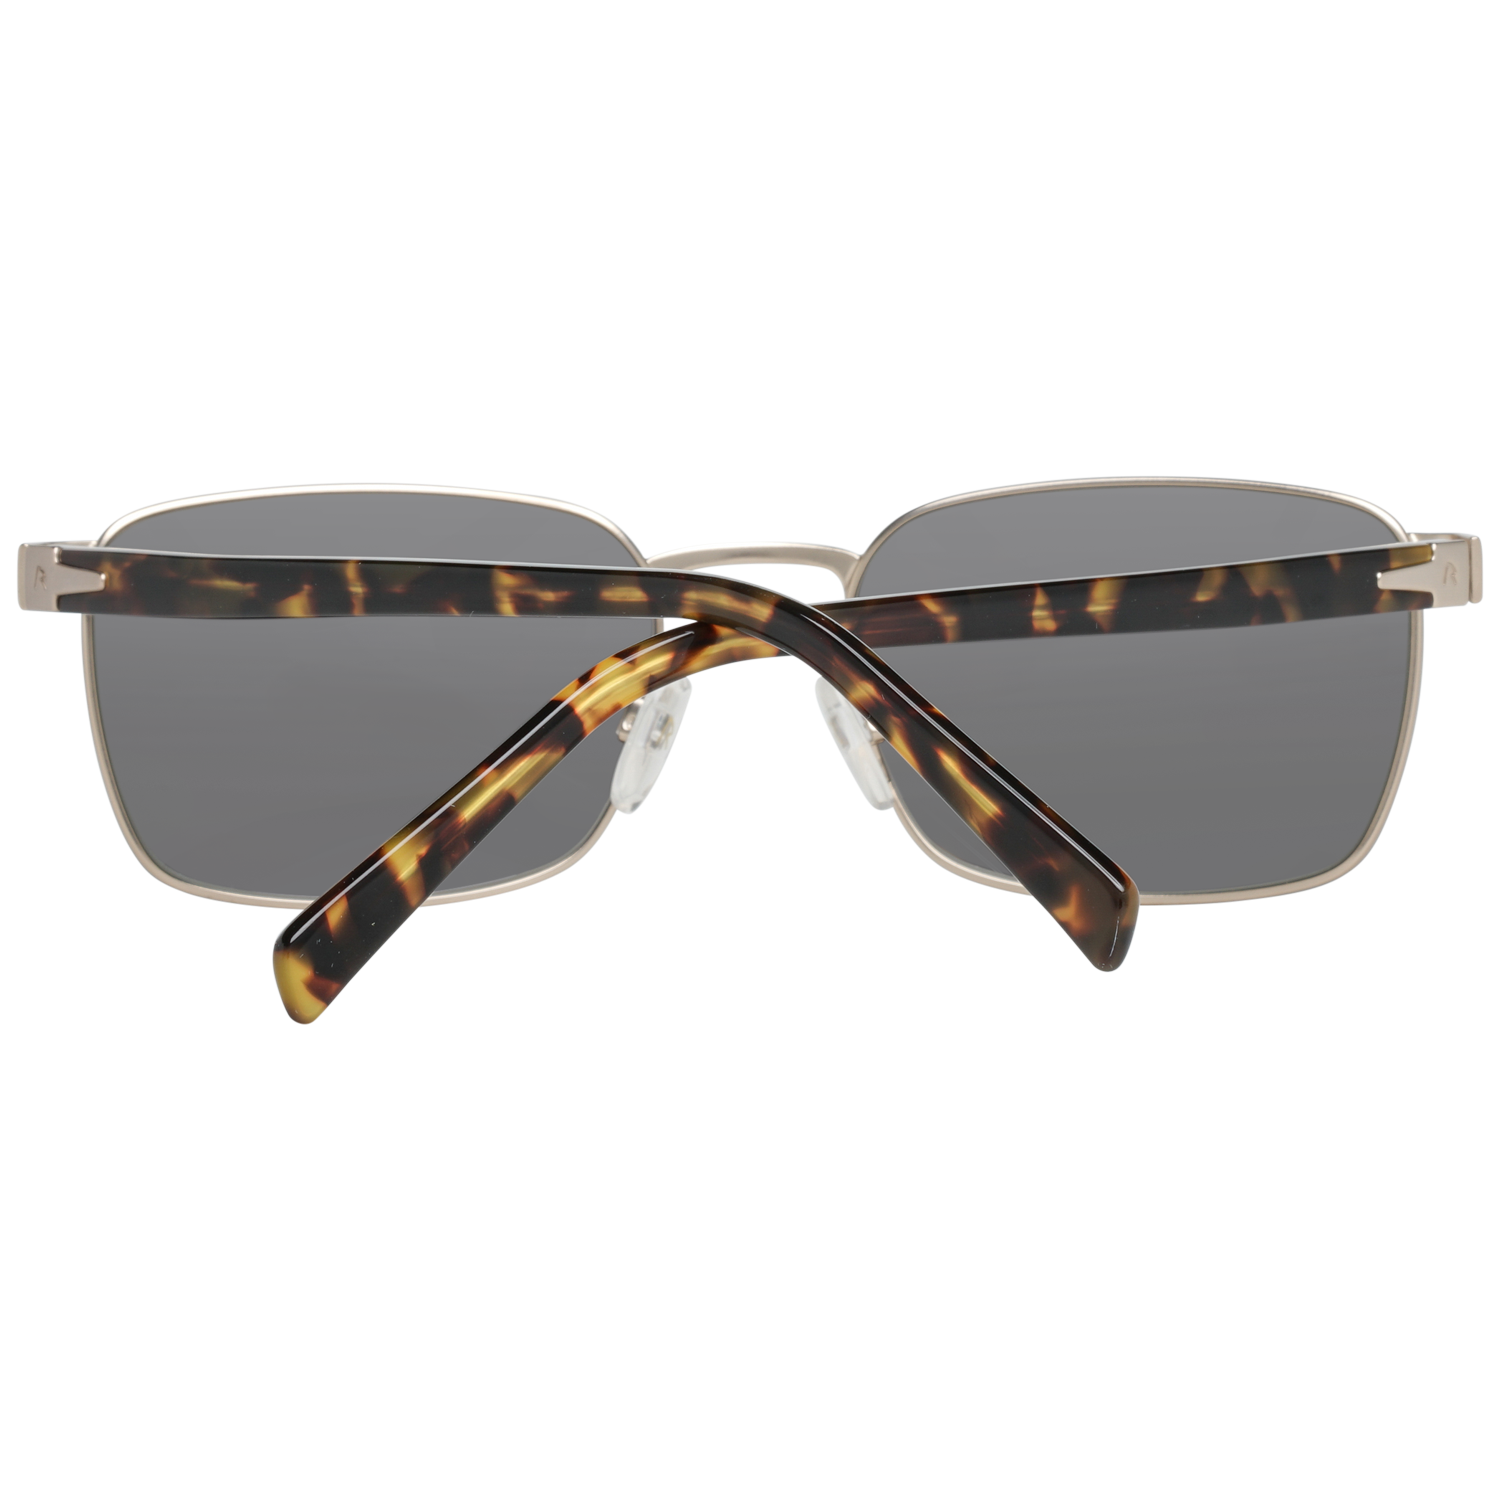 Rodenstock Sunglasses R1417 C 56 Men Silver